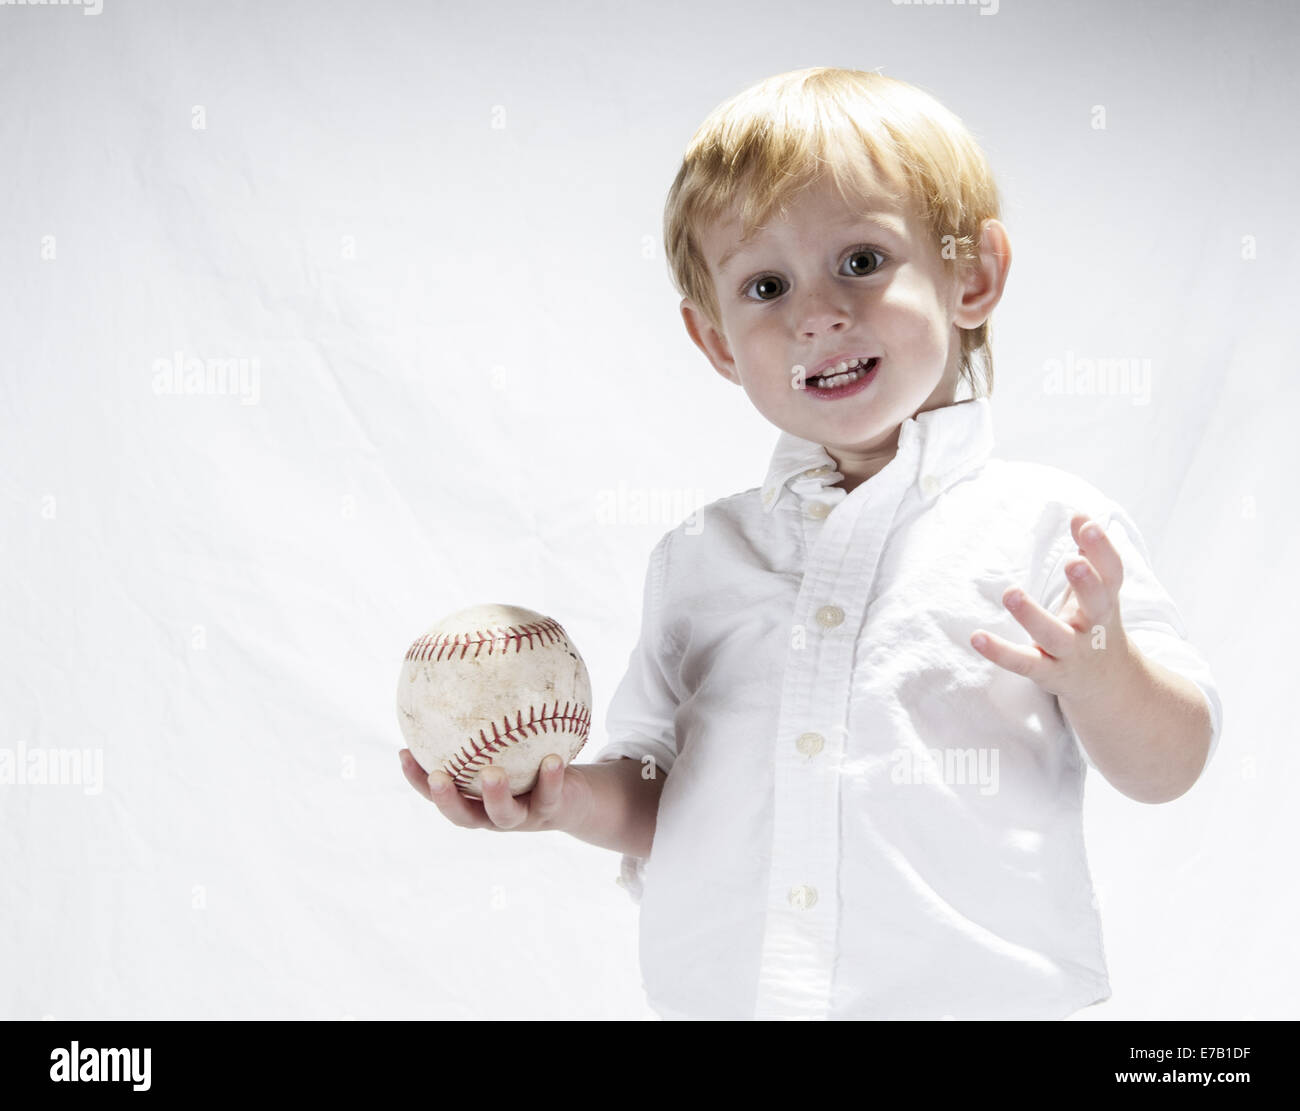 Jeune garçon dans une chemise blanche tenant une balle molle. Le fond est blanc, il a des cheveux blonds. Clermont Floride USA Banque D'Images